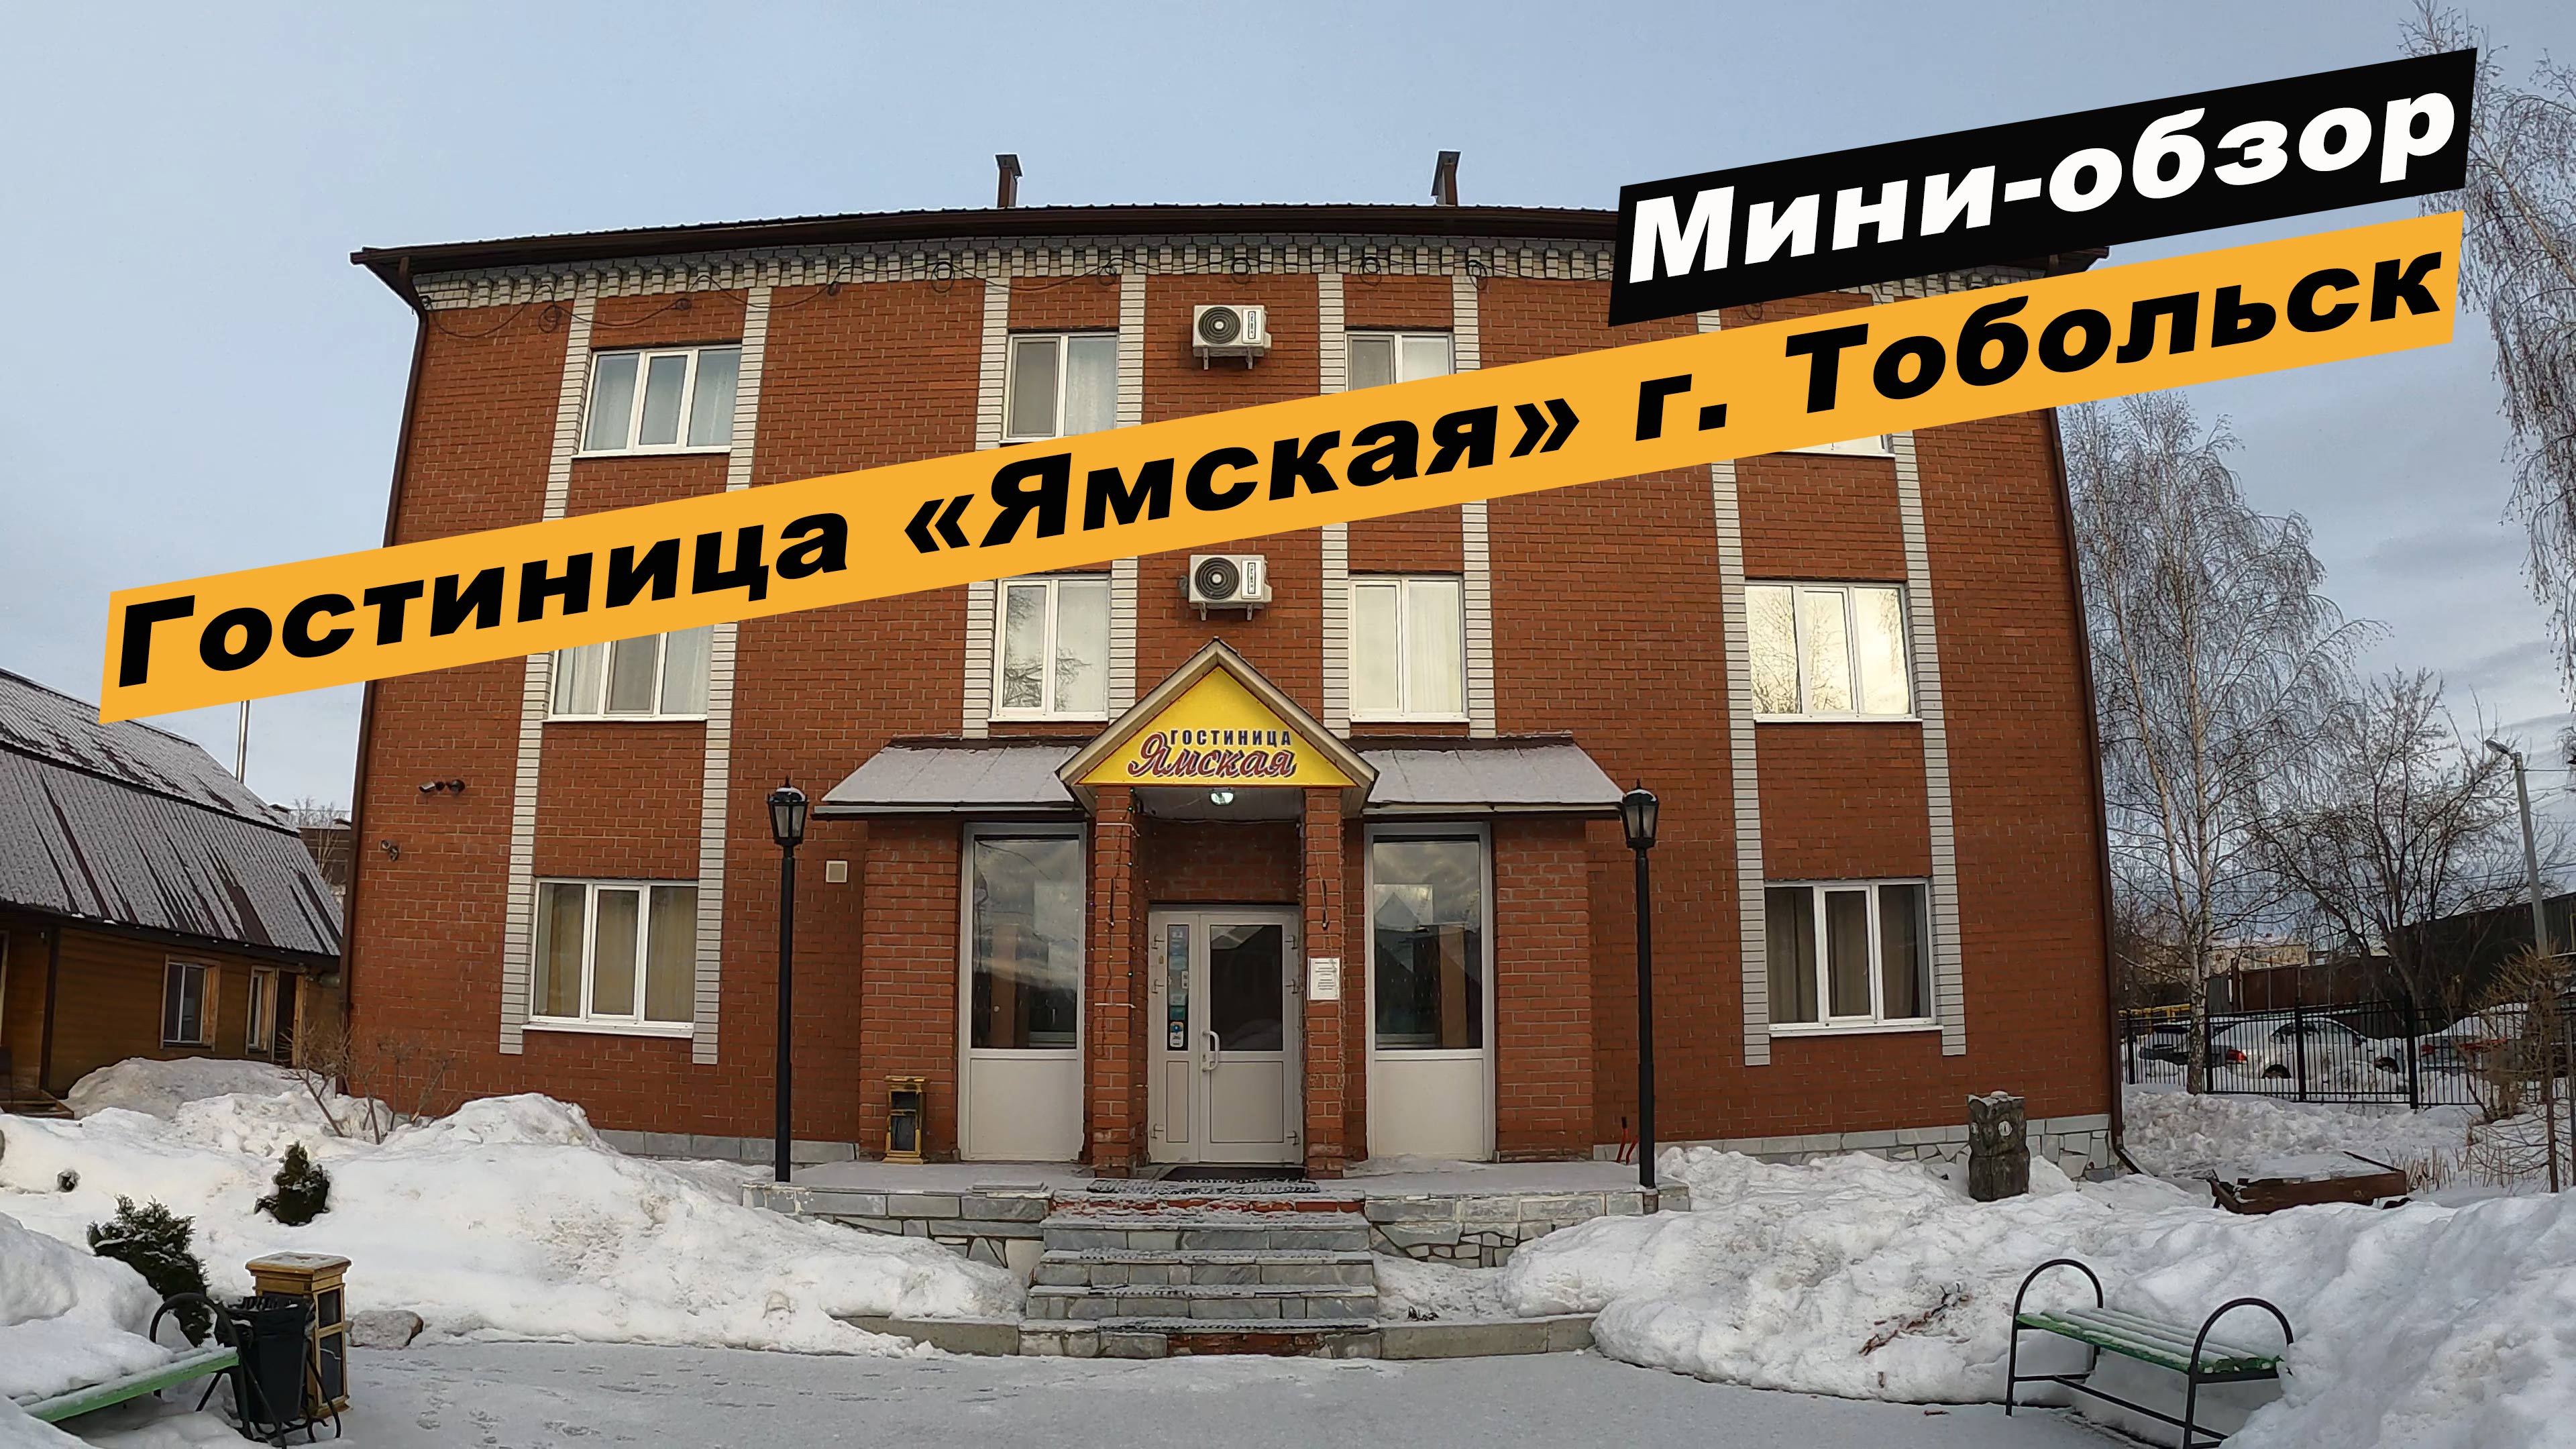 Мини-обзор гостиницы «Ямская» в г. Тобольск, Тюменской области. Hotel "Yamskaya".